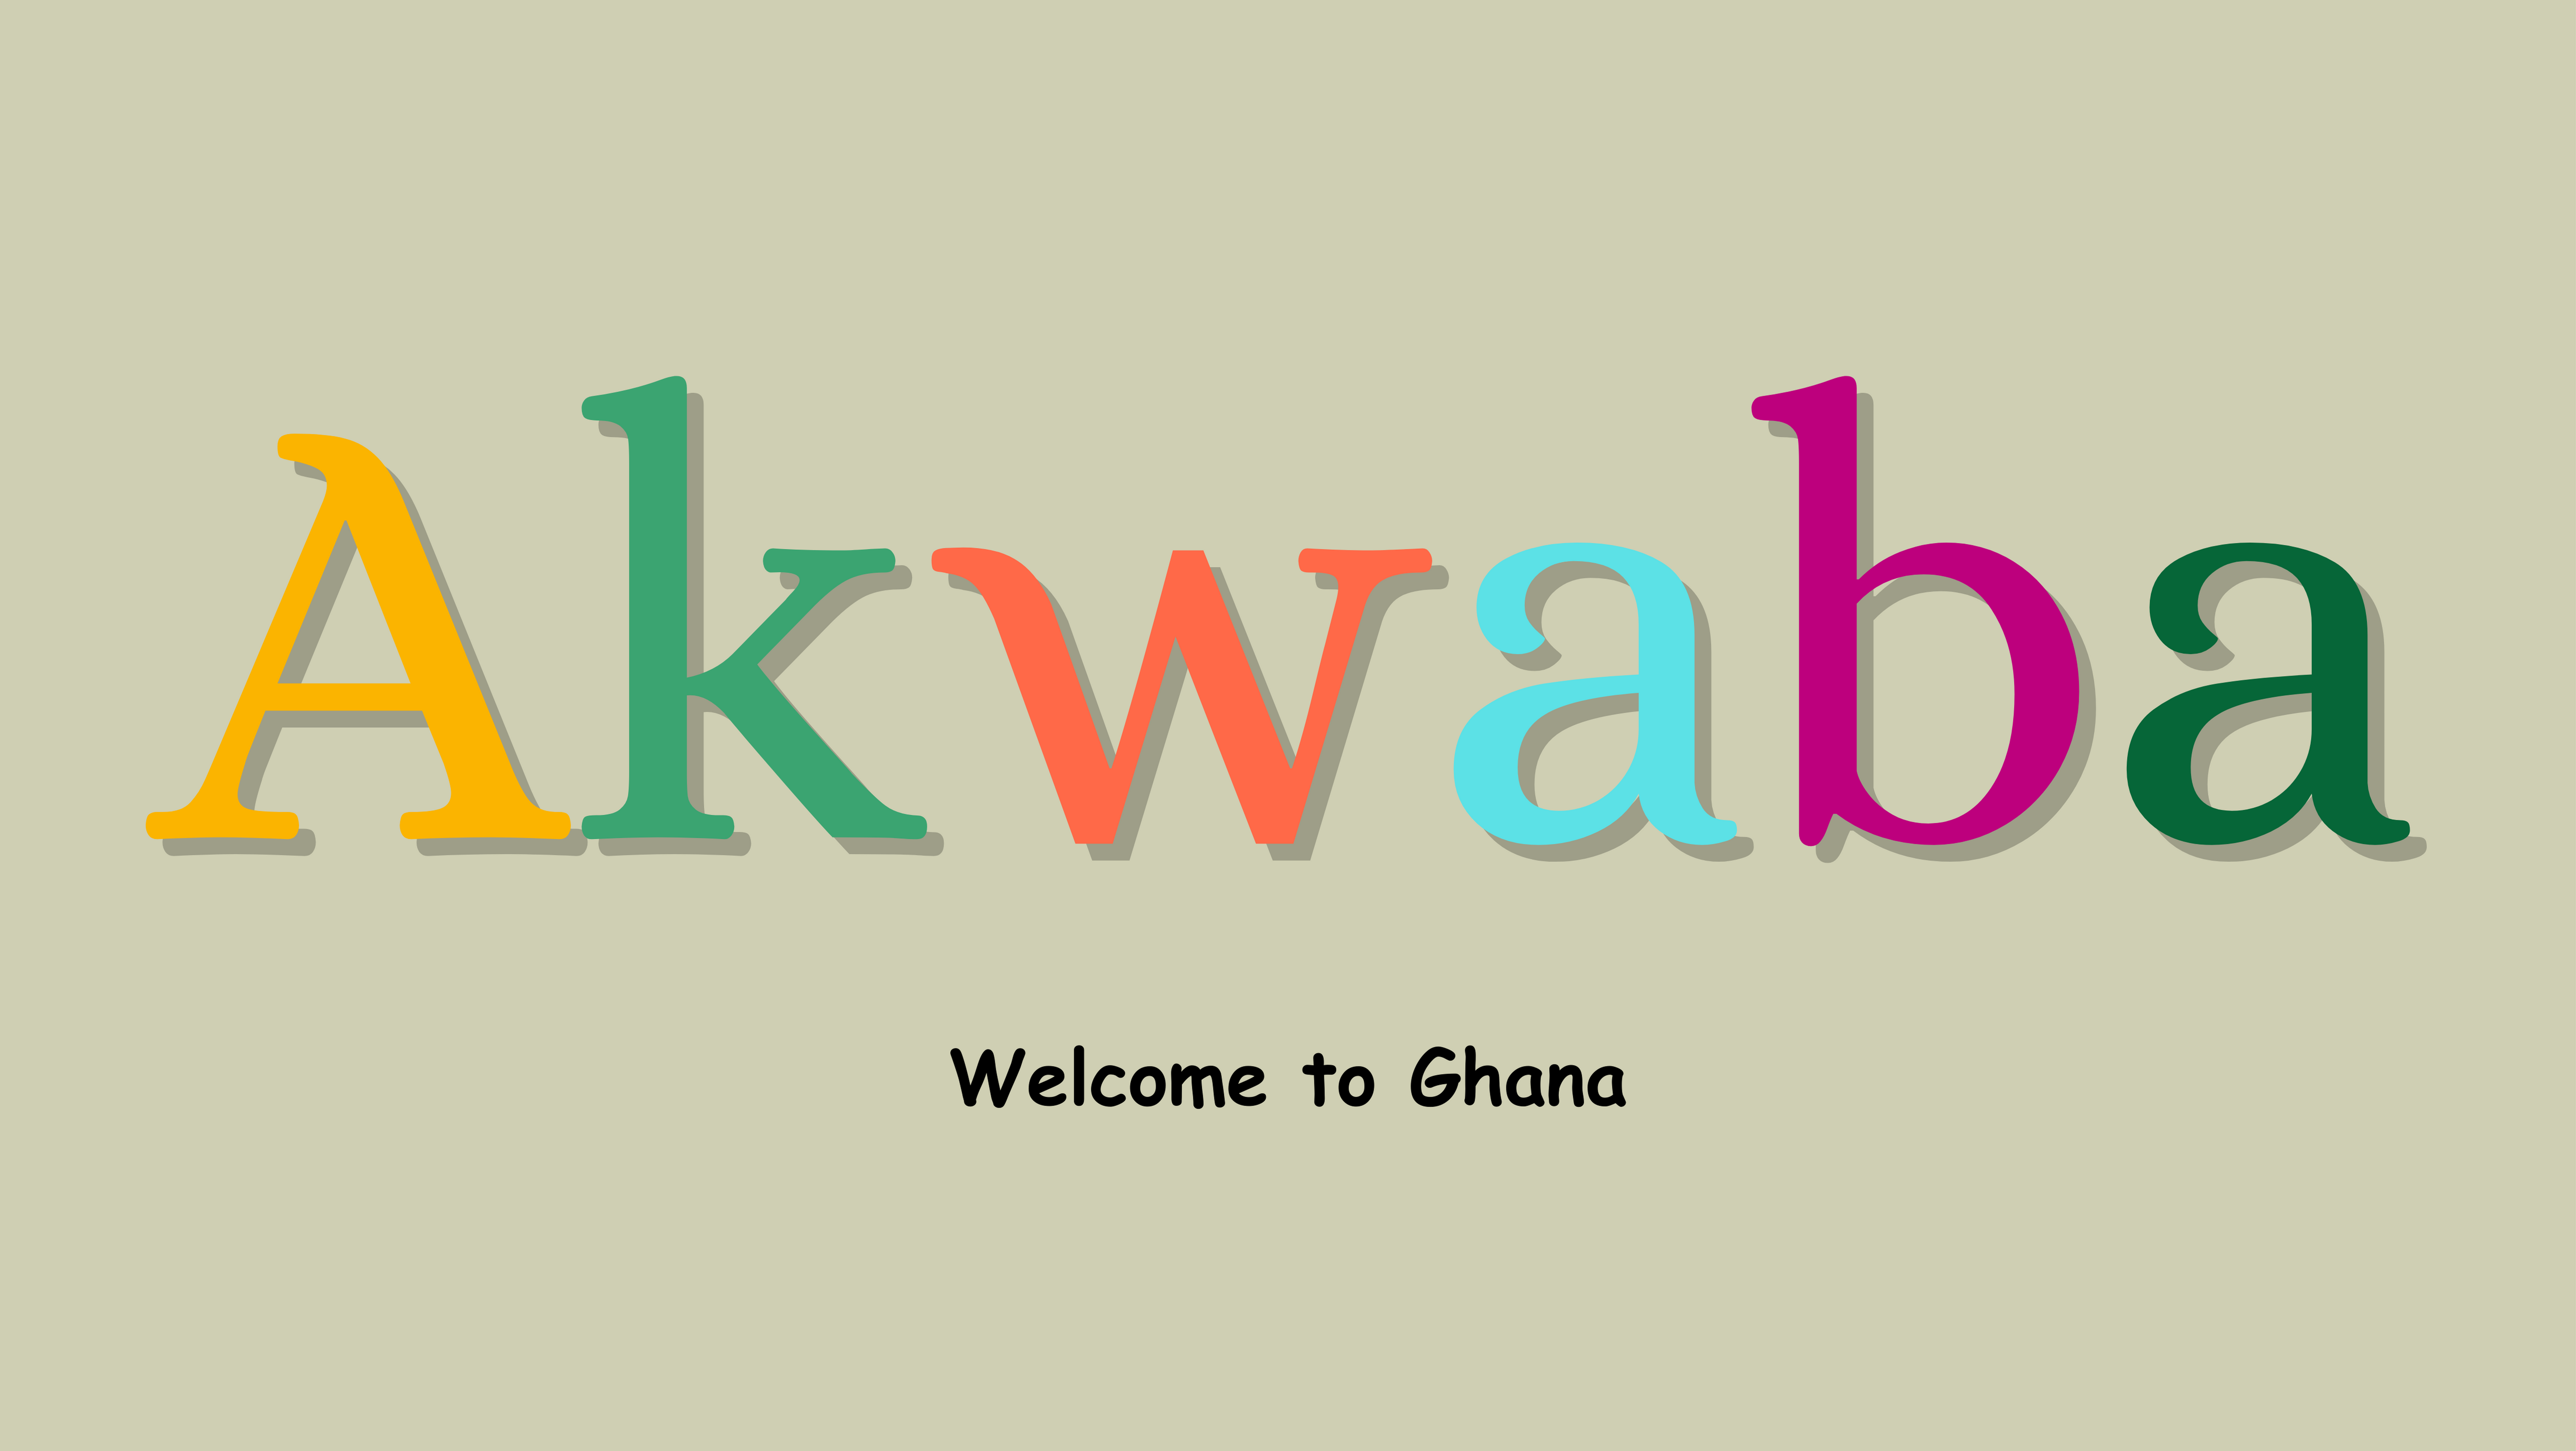 Greetings from Ghana